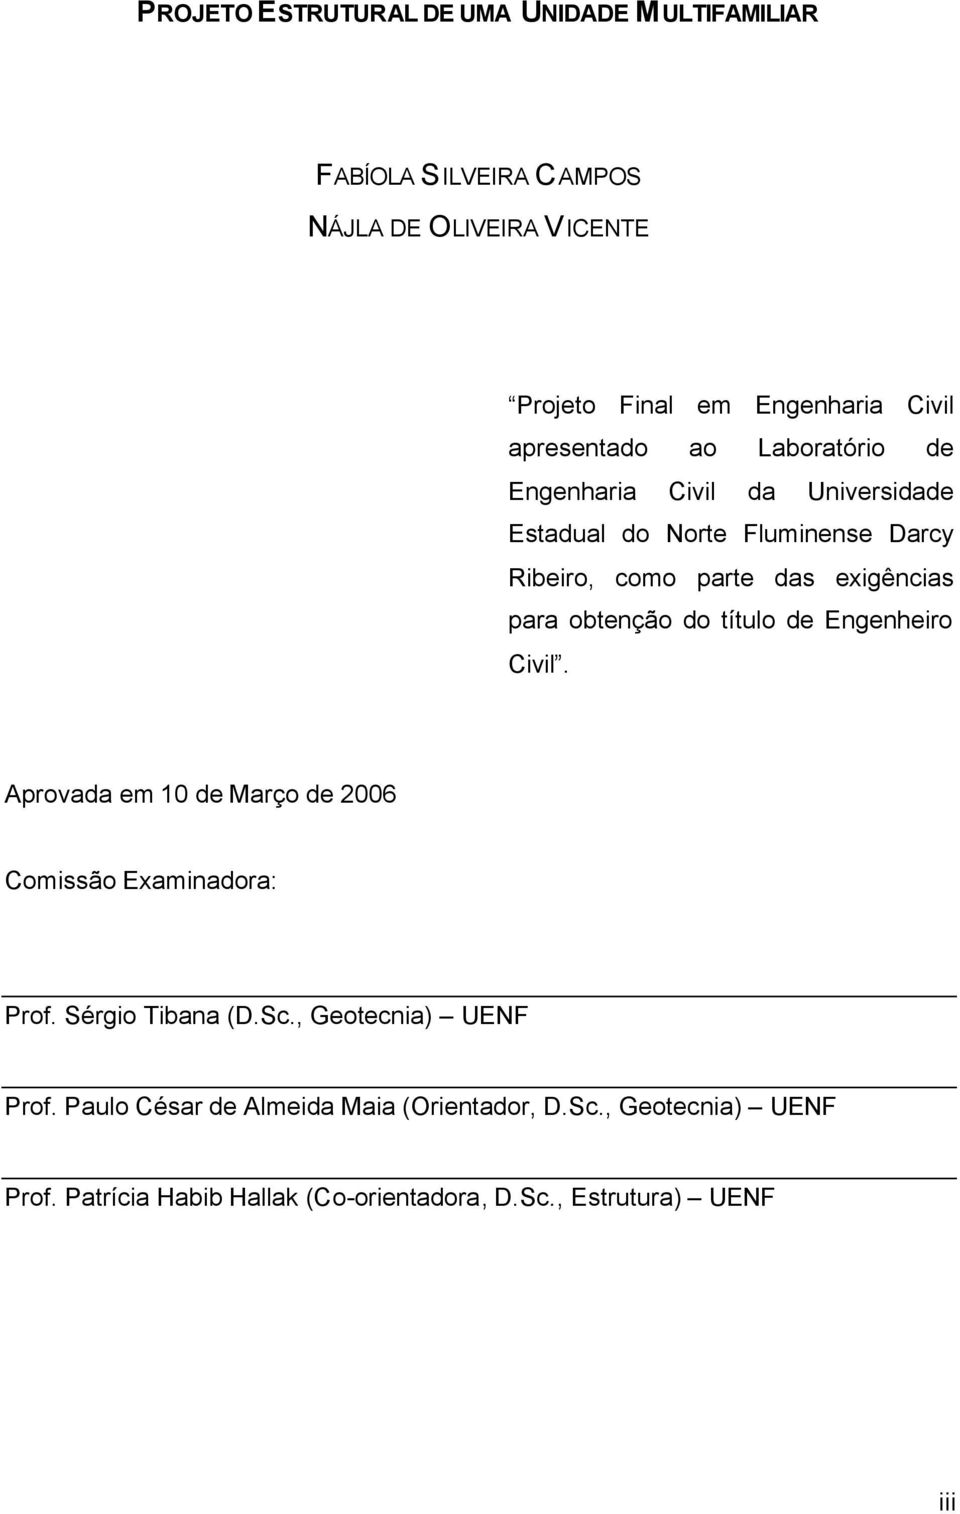 obtenção do título de Engenheiro Civil. provada em de Março de 06 Comissão Examinadora: Prof. Sérgio Tibana (D.Sc.